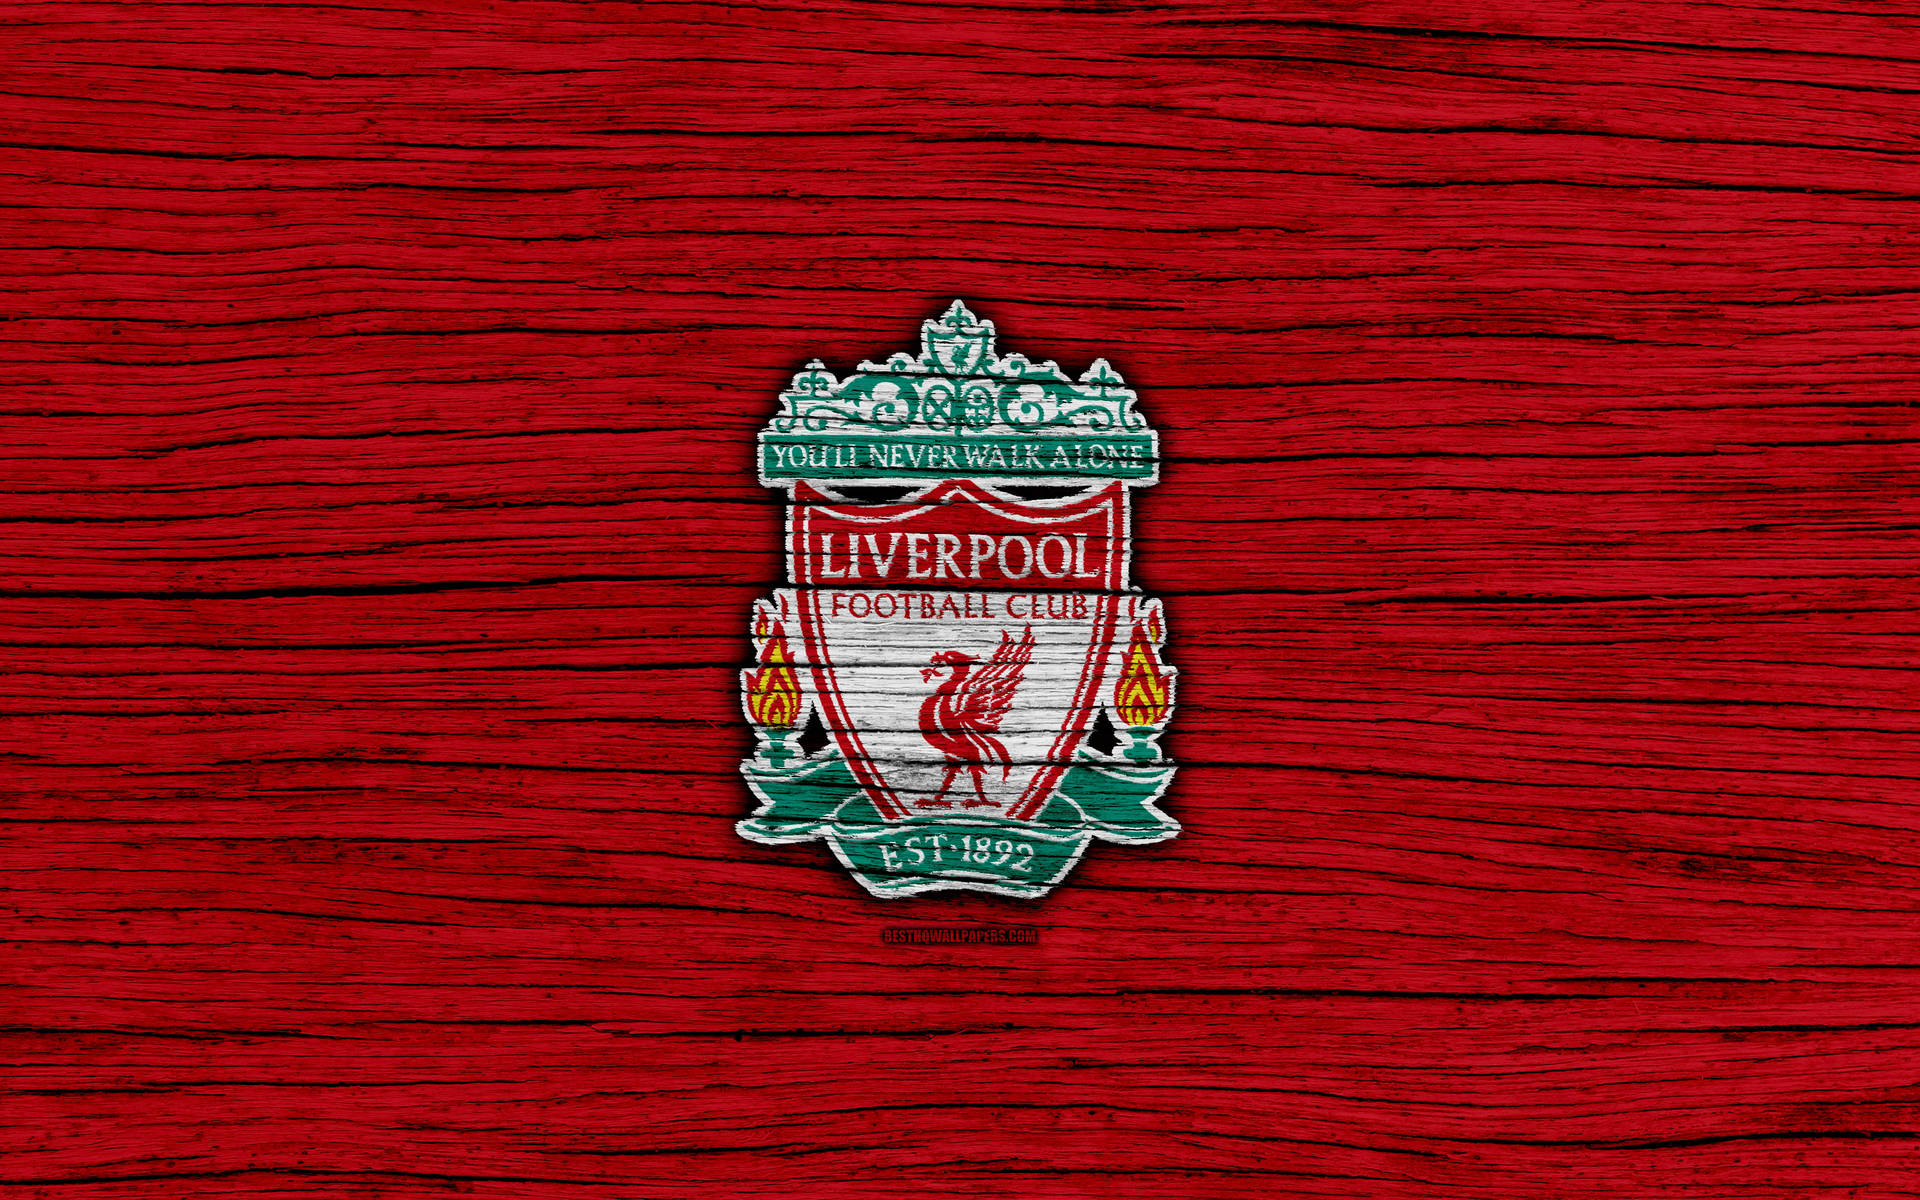 Logotipodel Liverpool En 4k Sobre Textura De Madera. Fondo de pantalla